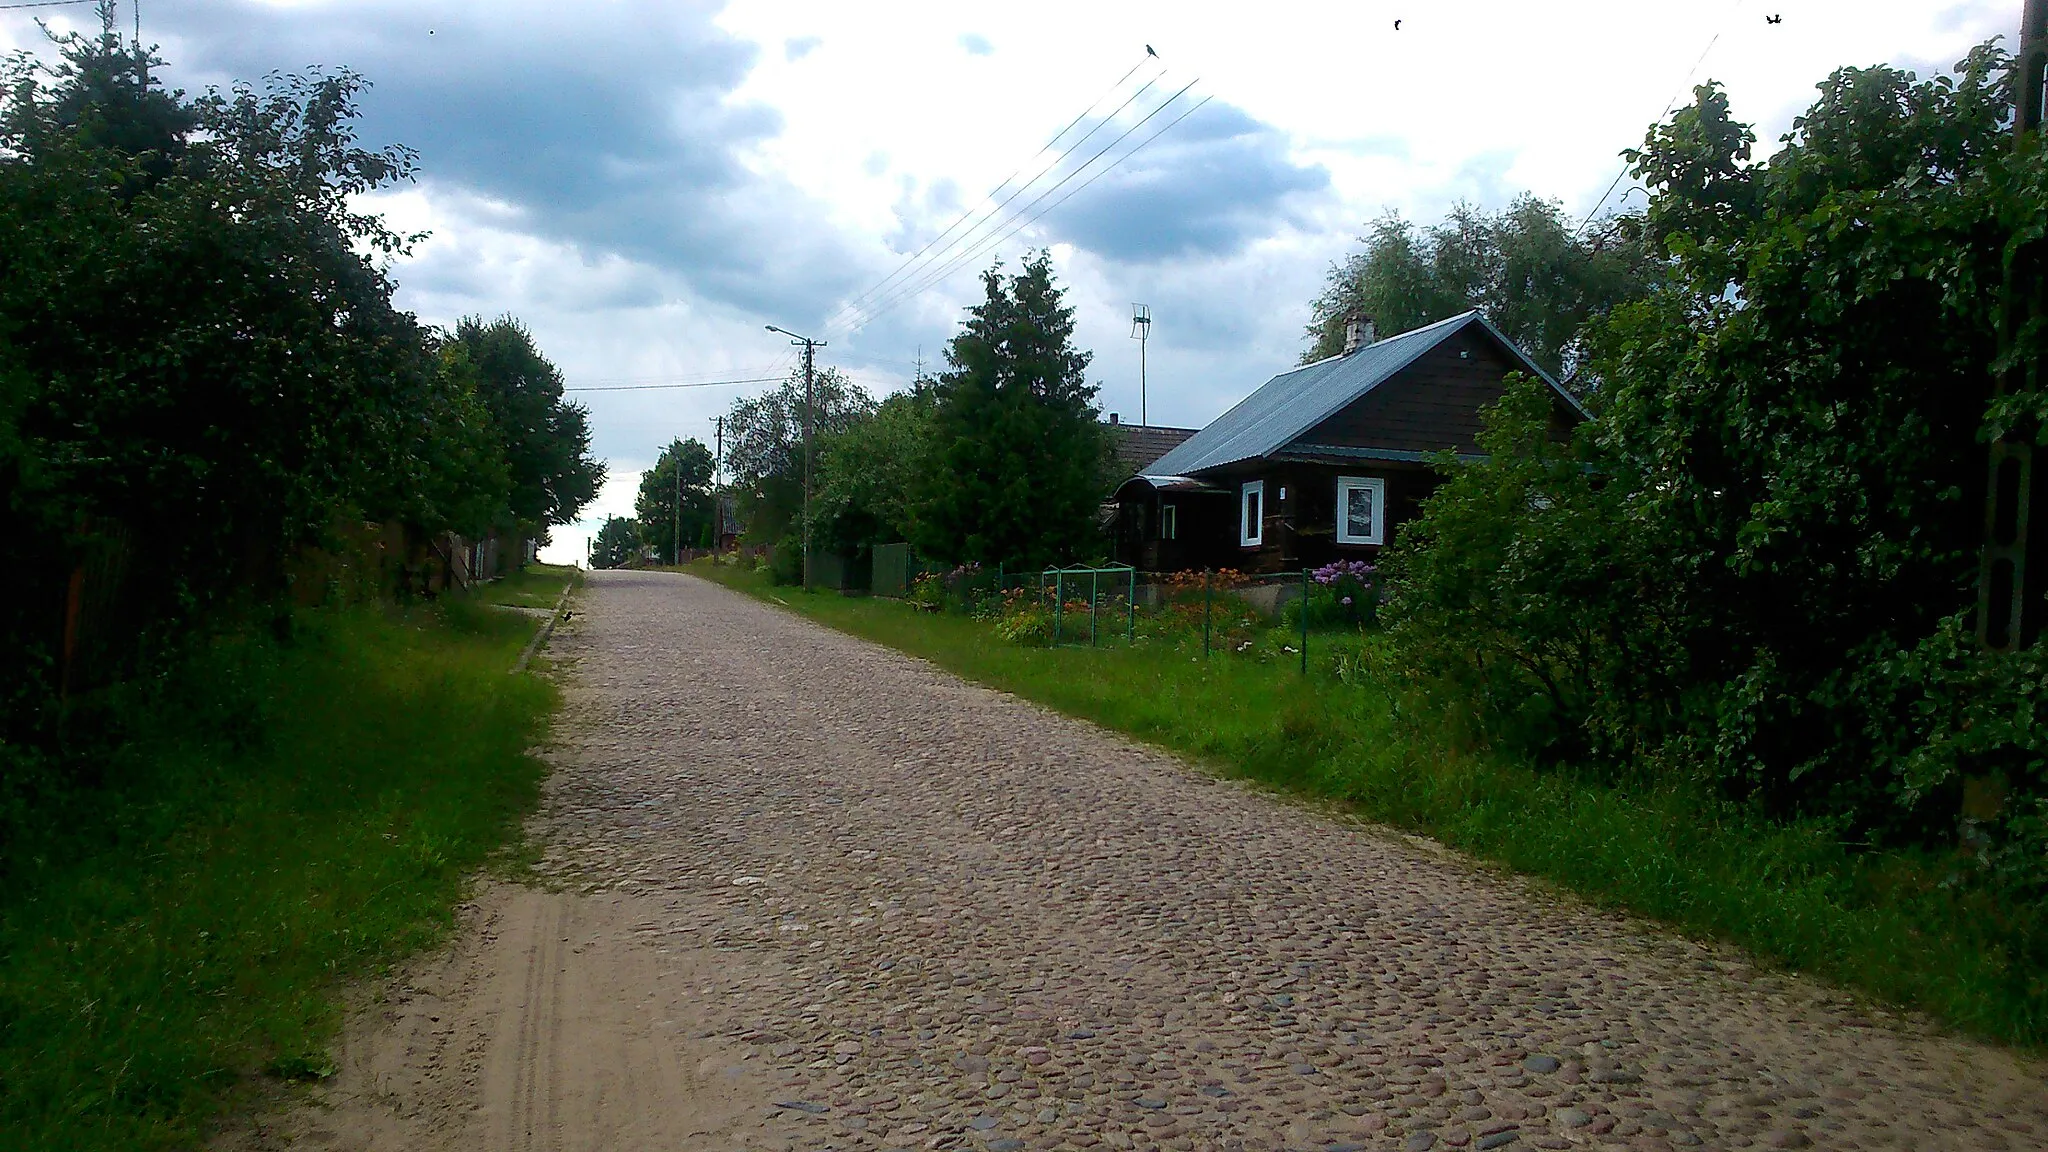 Photo showing: Podozierany - village in Podlaskie Voivodeship, Poland.